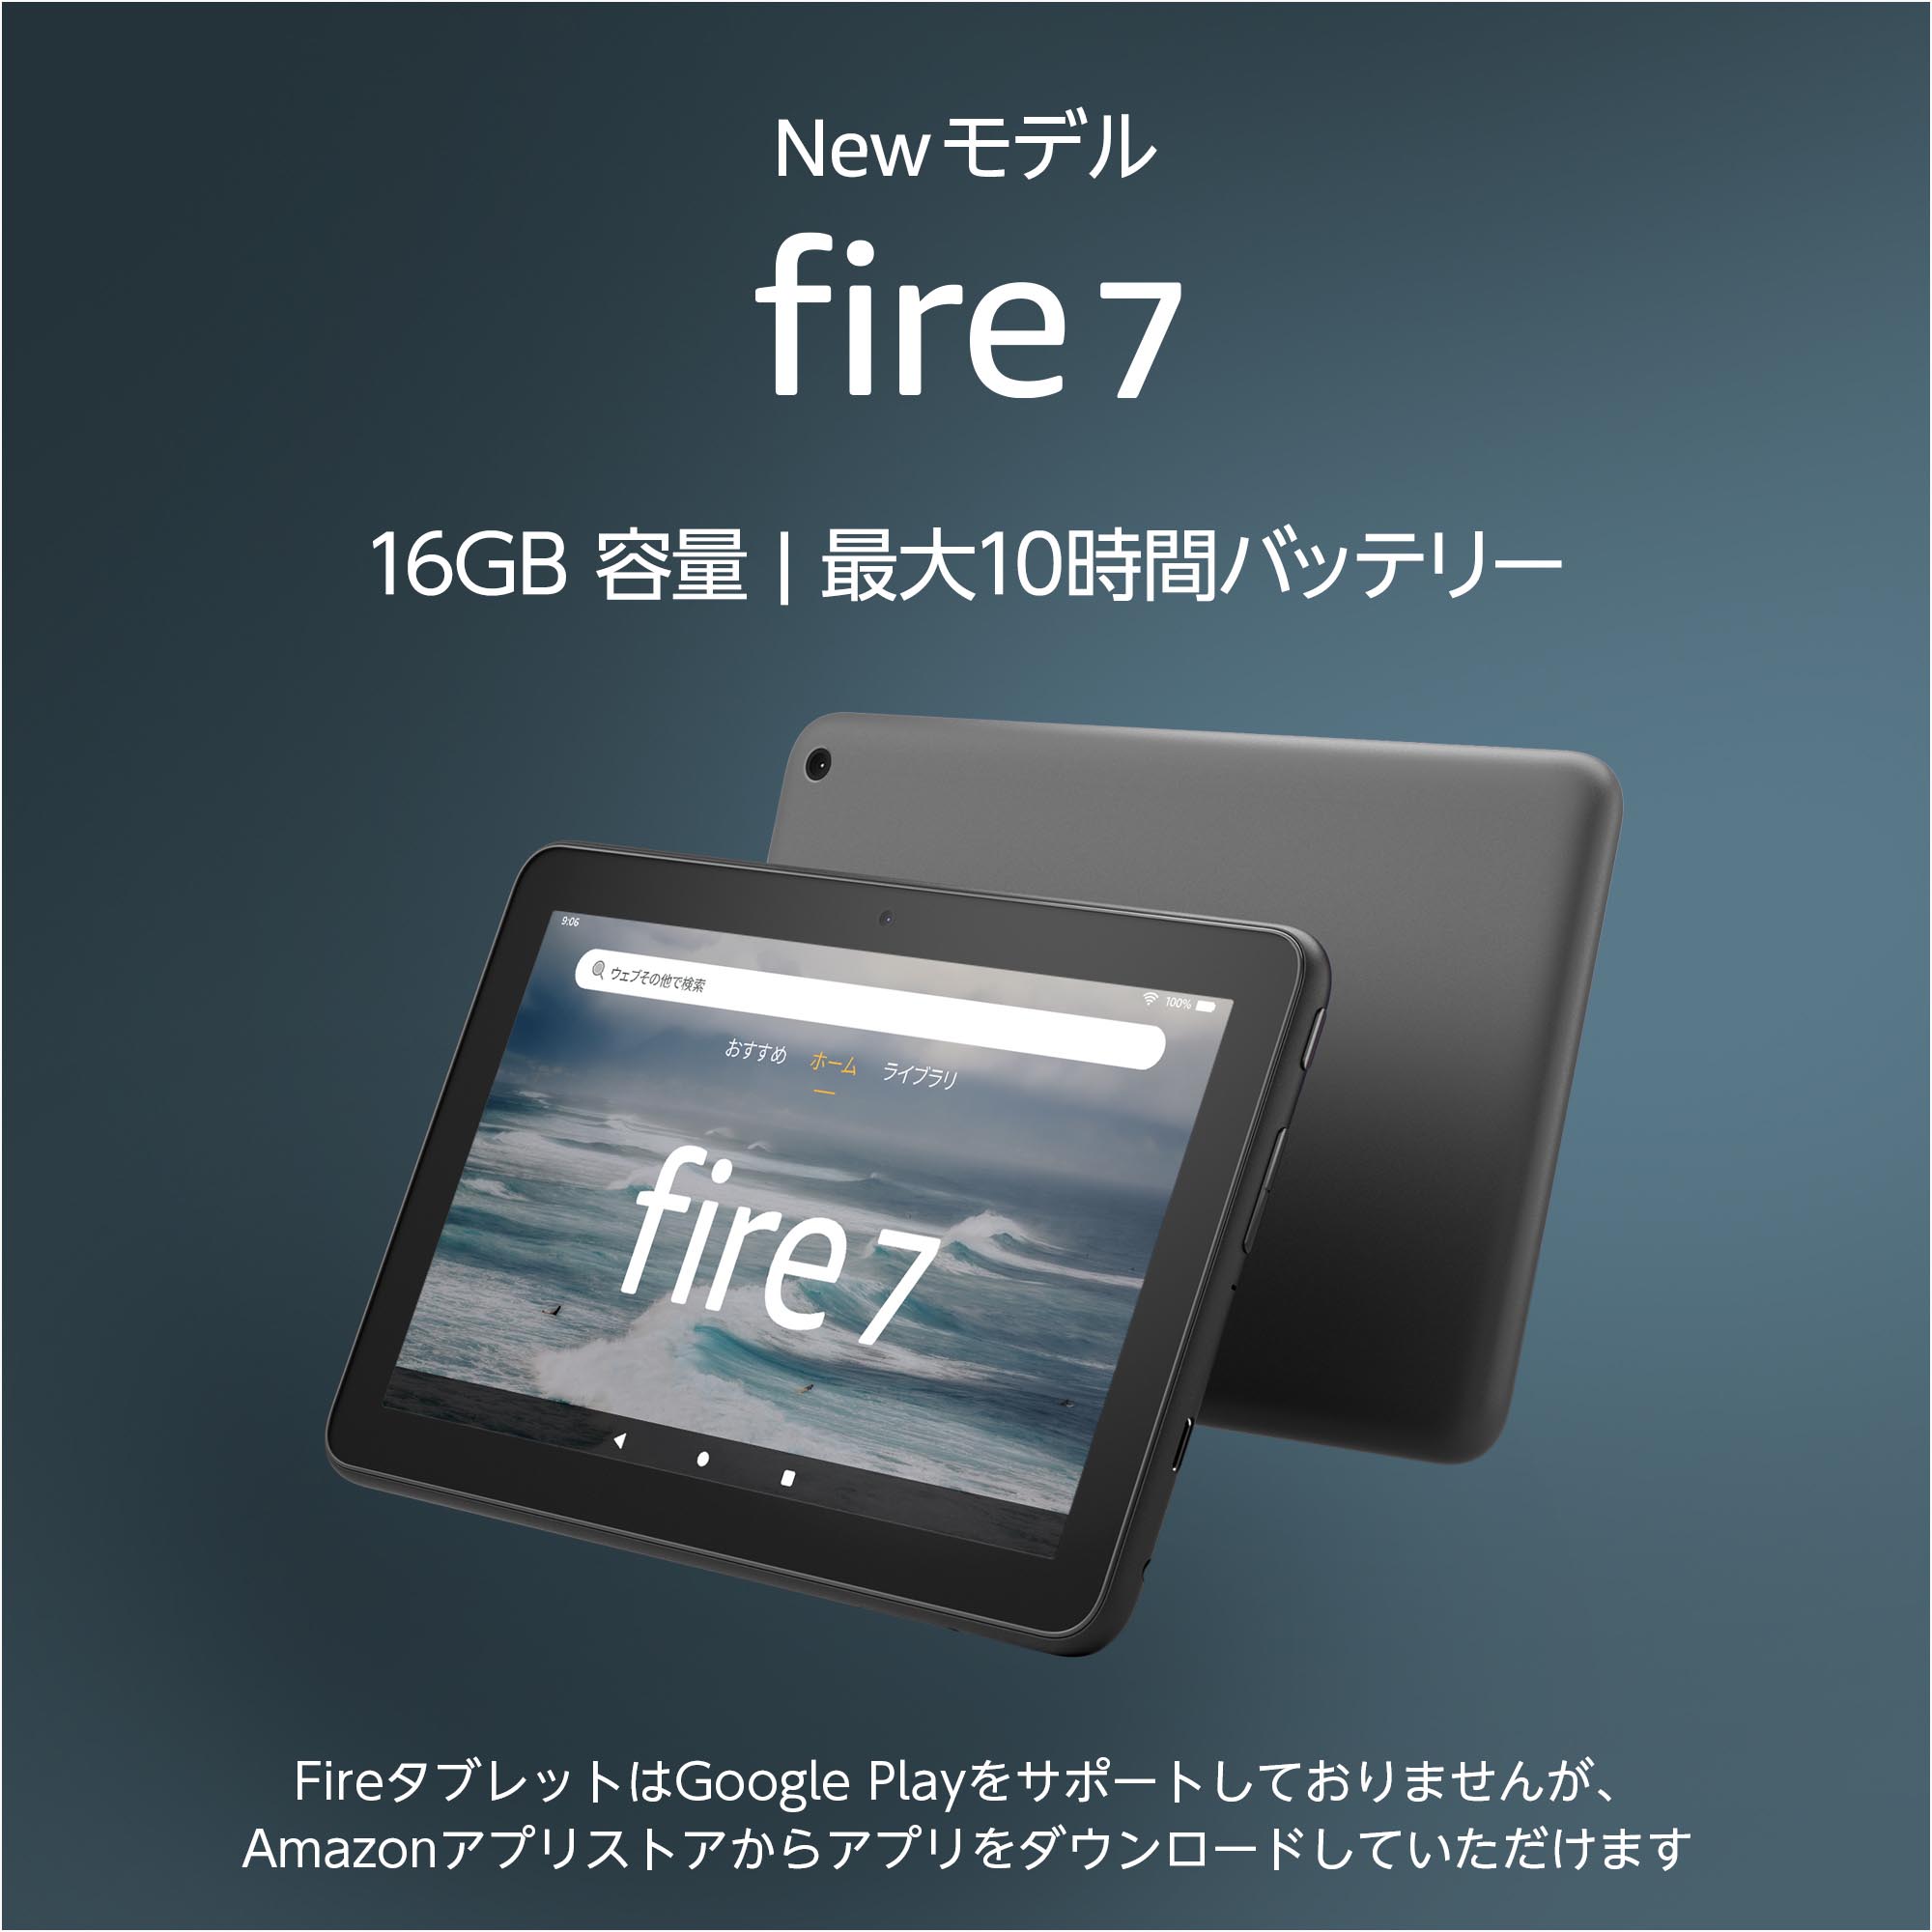 Amazon 7型タブレット Fire 7 新モデル パフォーマンスとバッテリー駆動時間を向上 税込み6980円 Itmedia Pc User